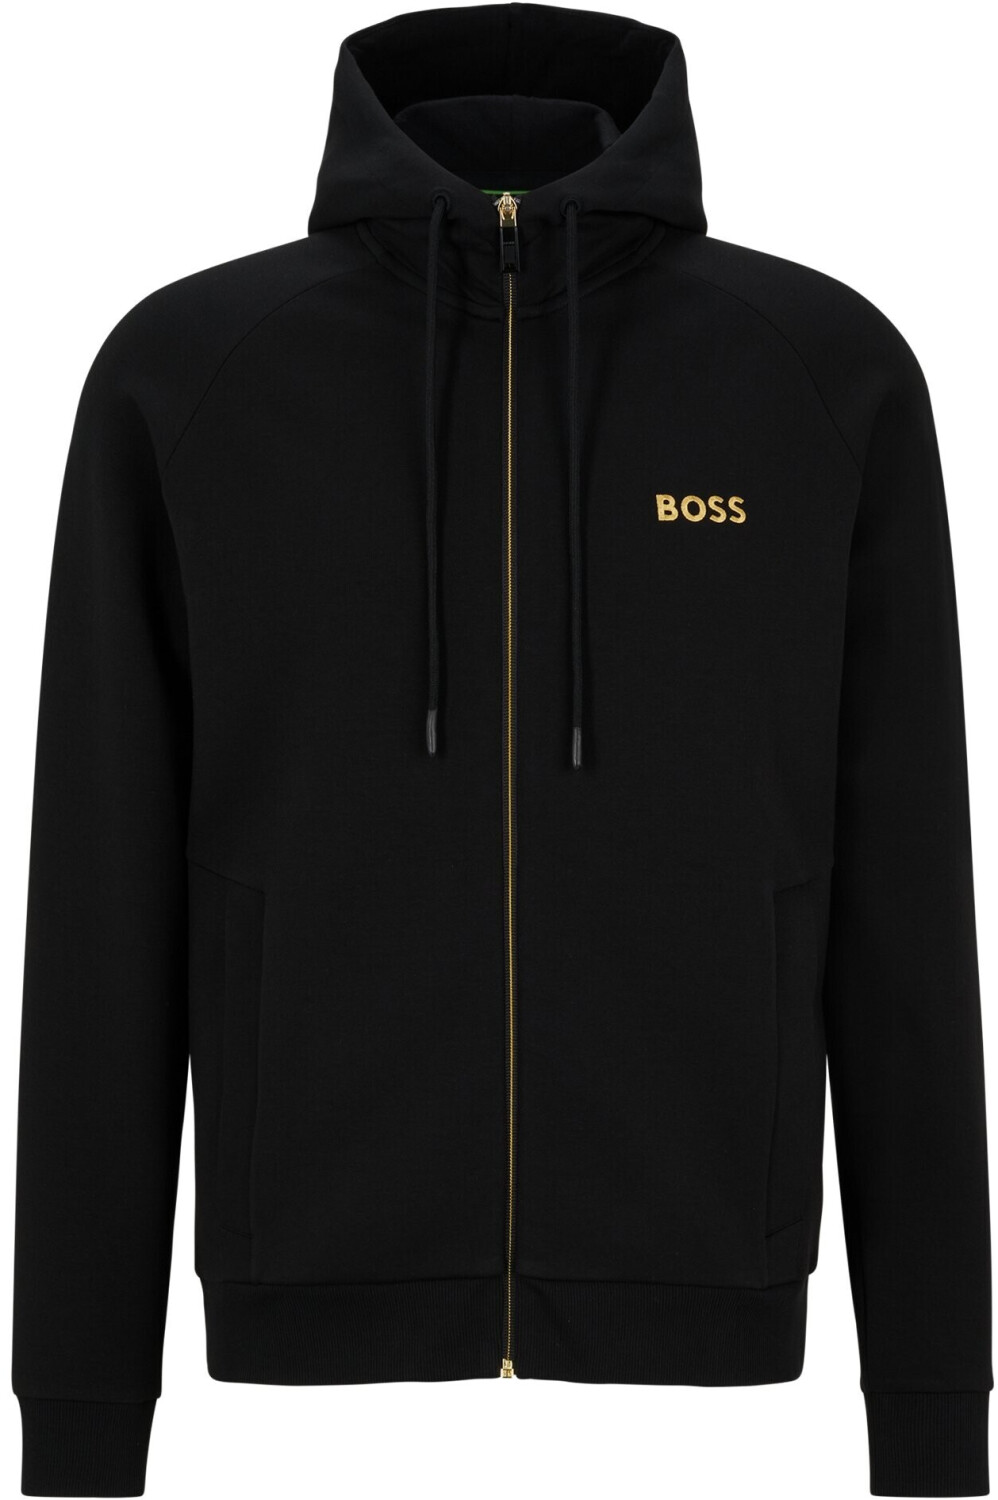 Hugo Boss Saggy 1 Sweater Black 50482888 001 Ab 130 00 € Preisvergleich Bei Idealo De